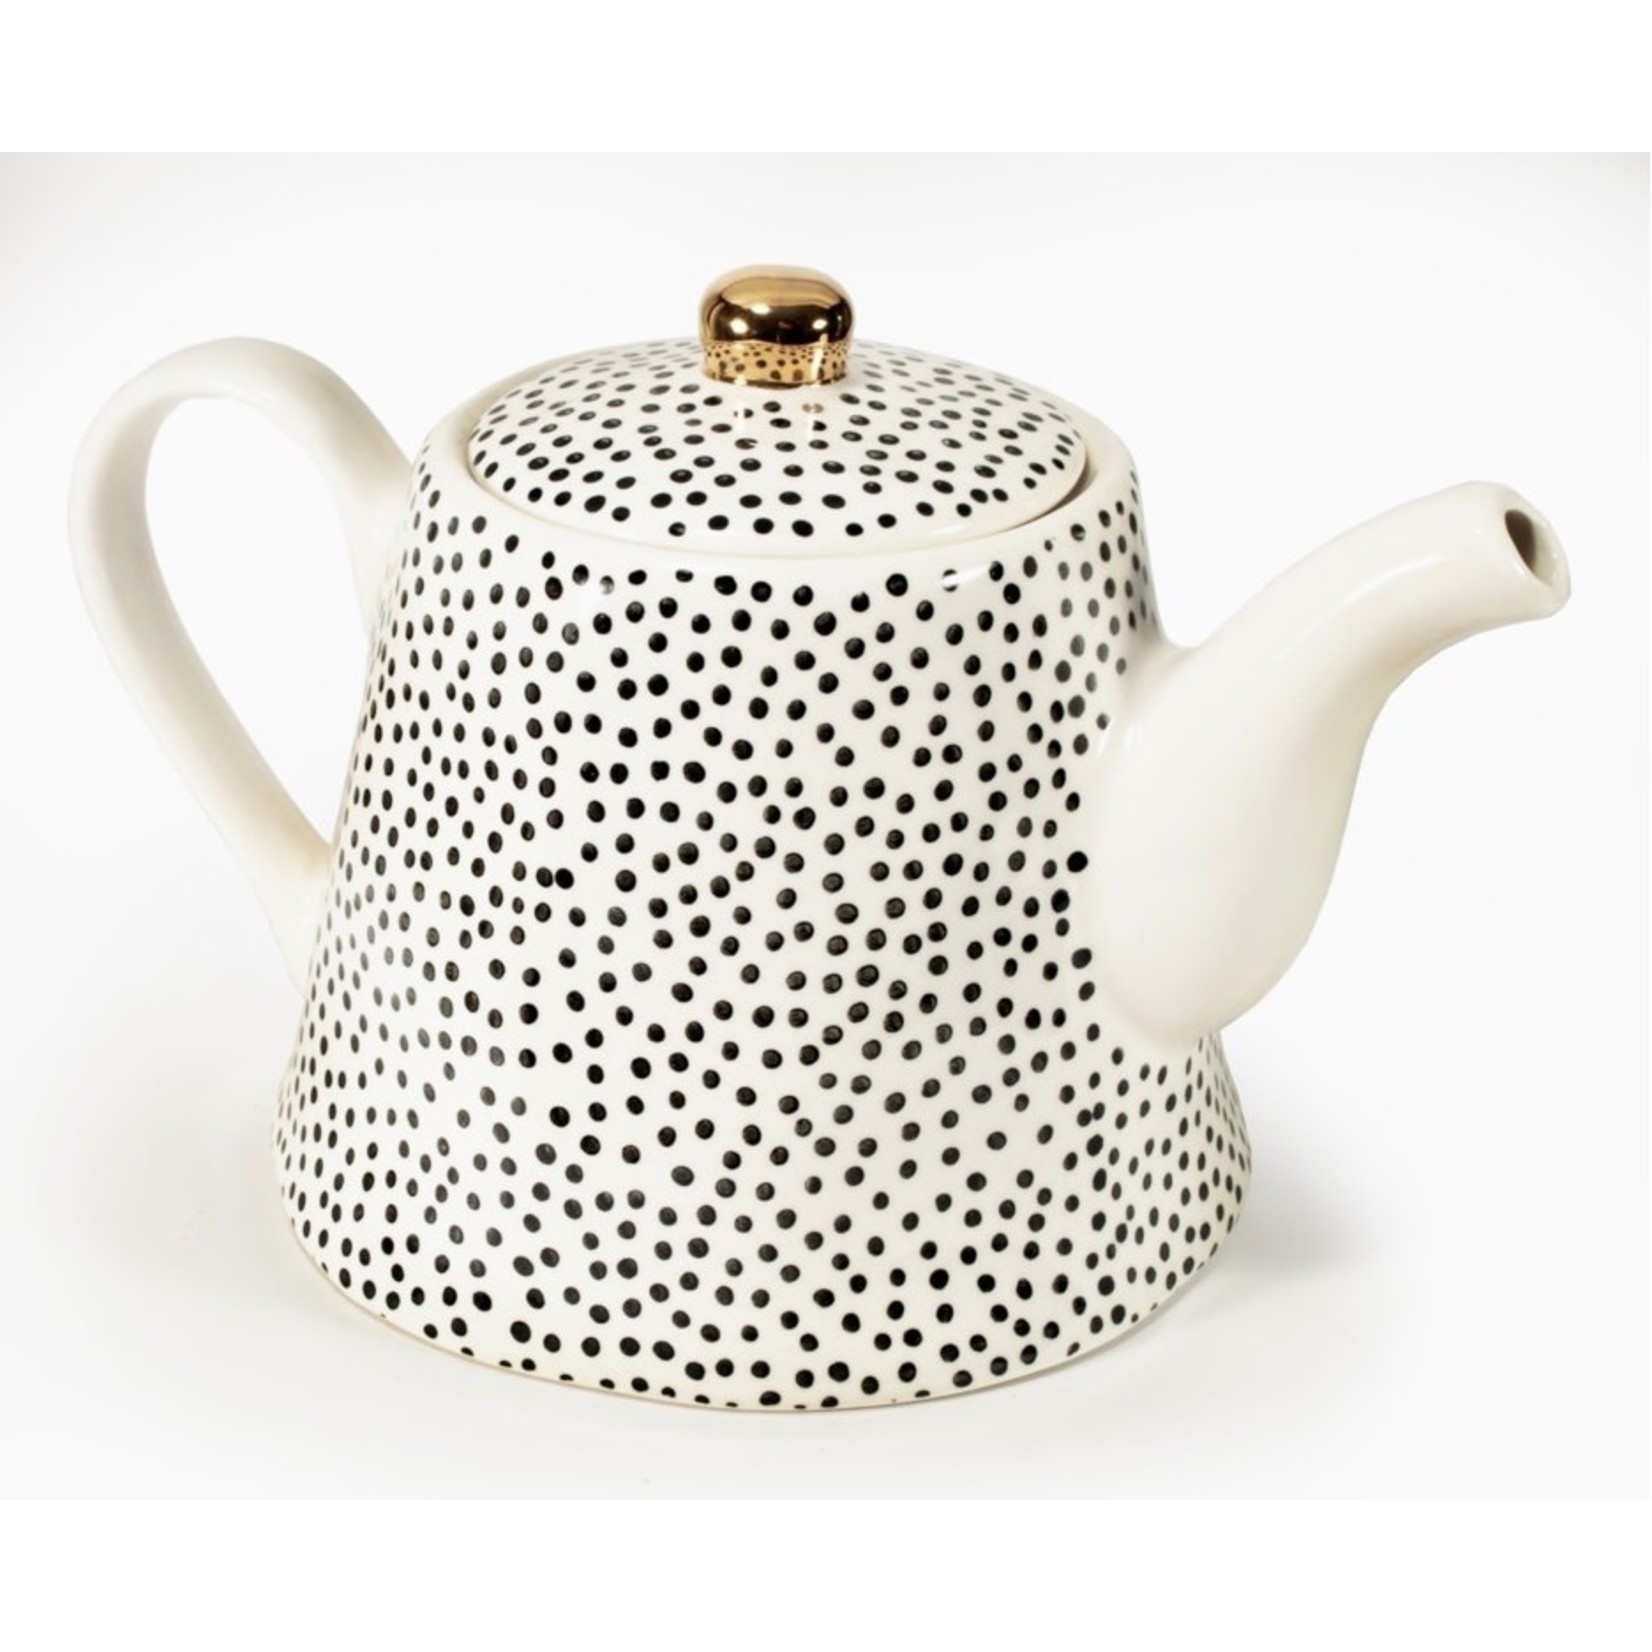 KITCHENBASICS Teapot Black&White w/Gold Knob